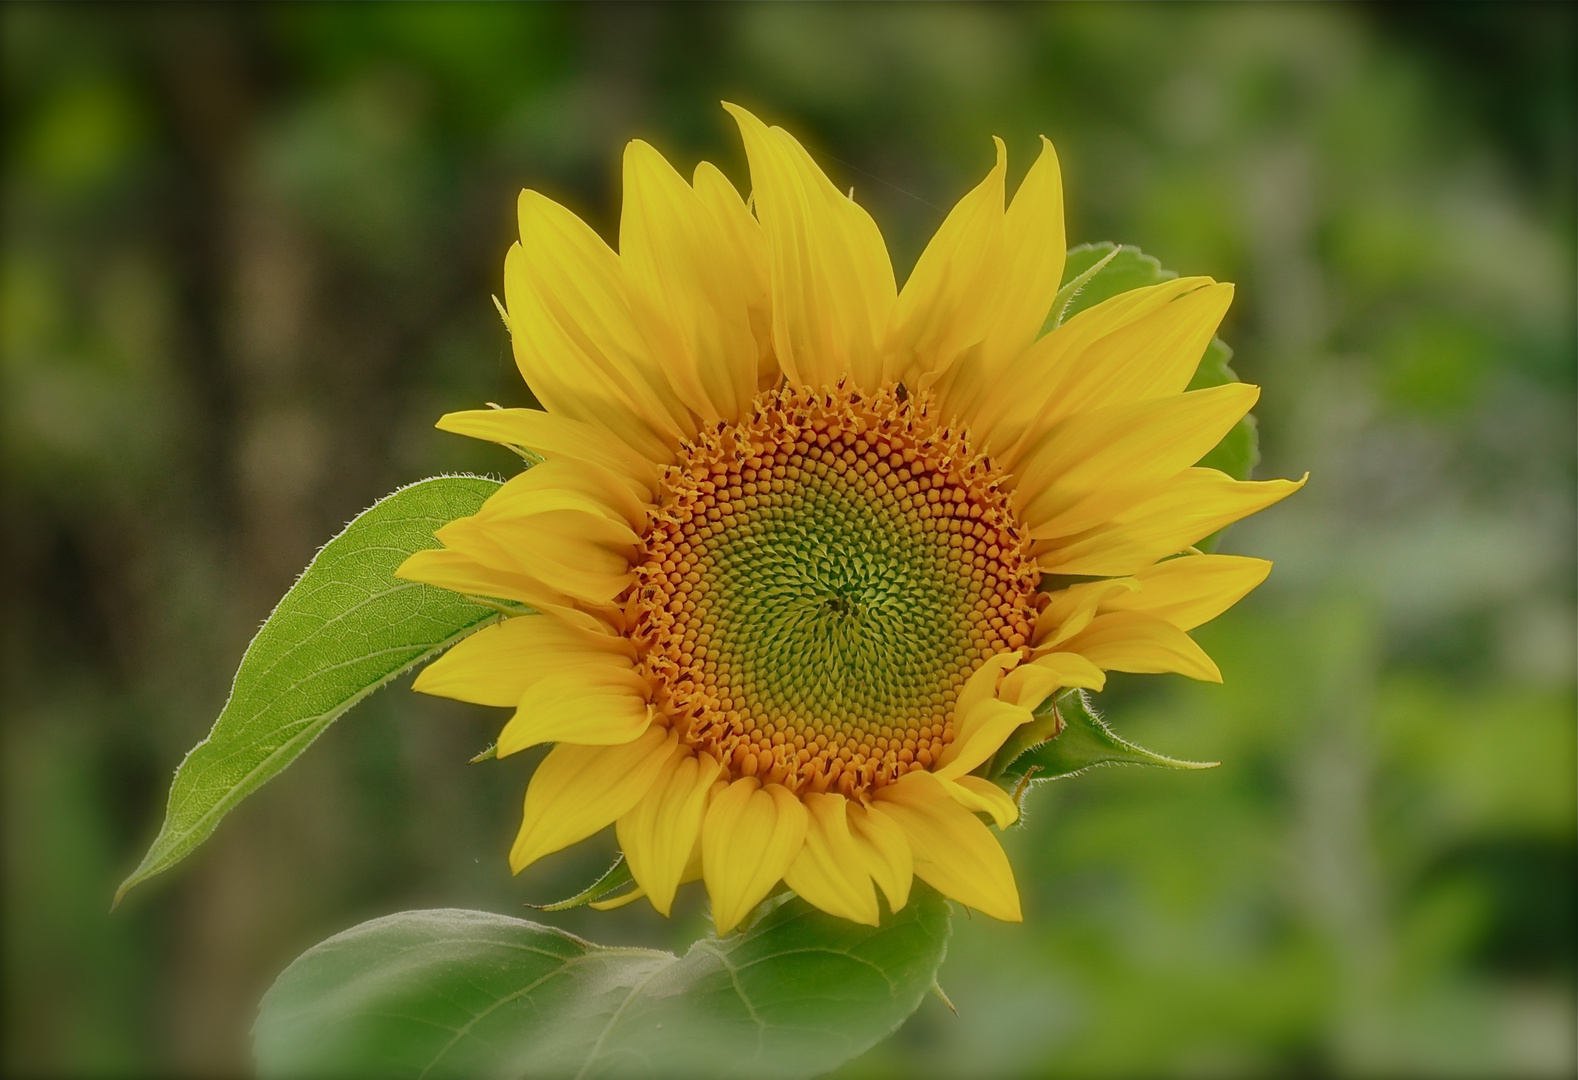 Little sunflower